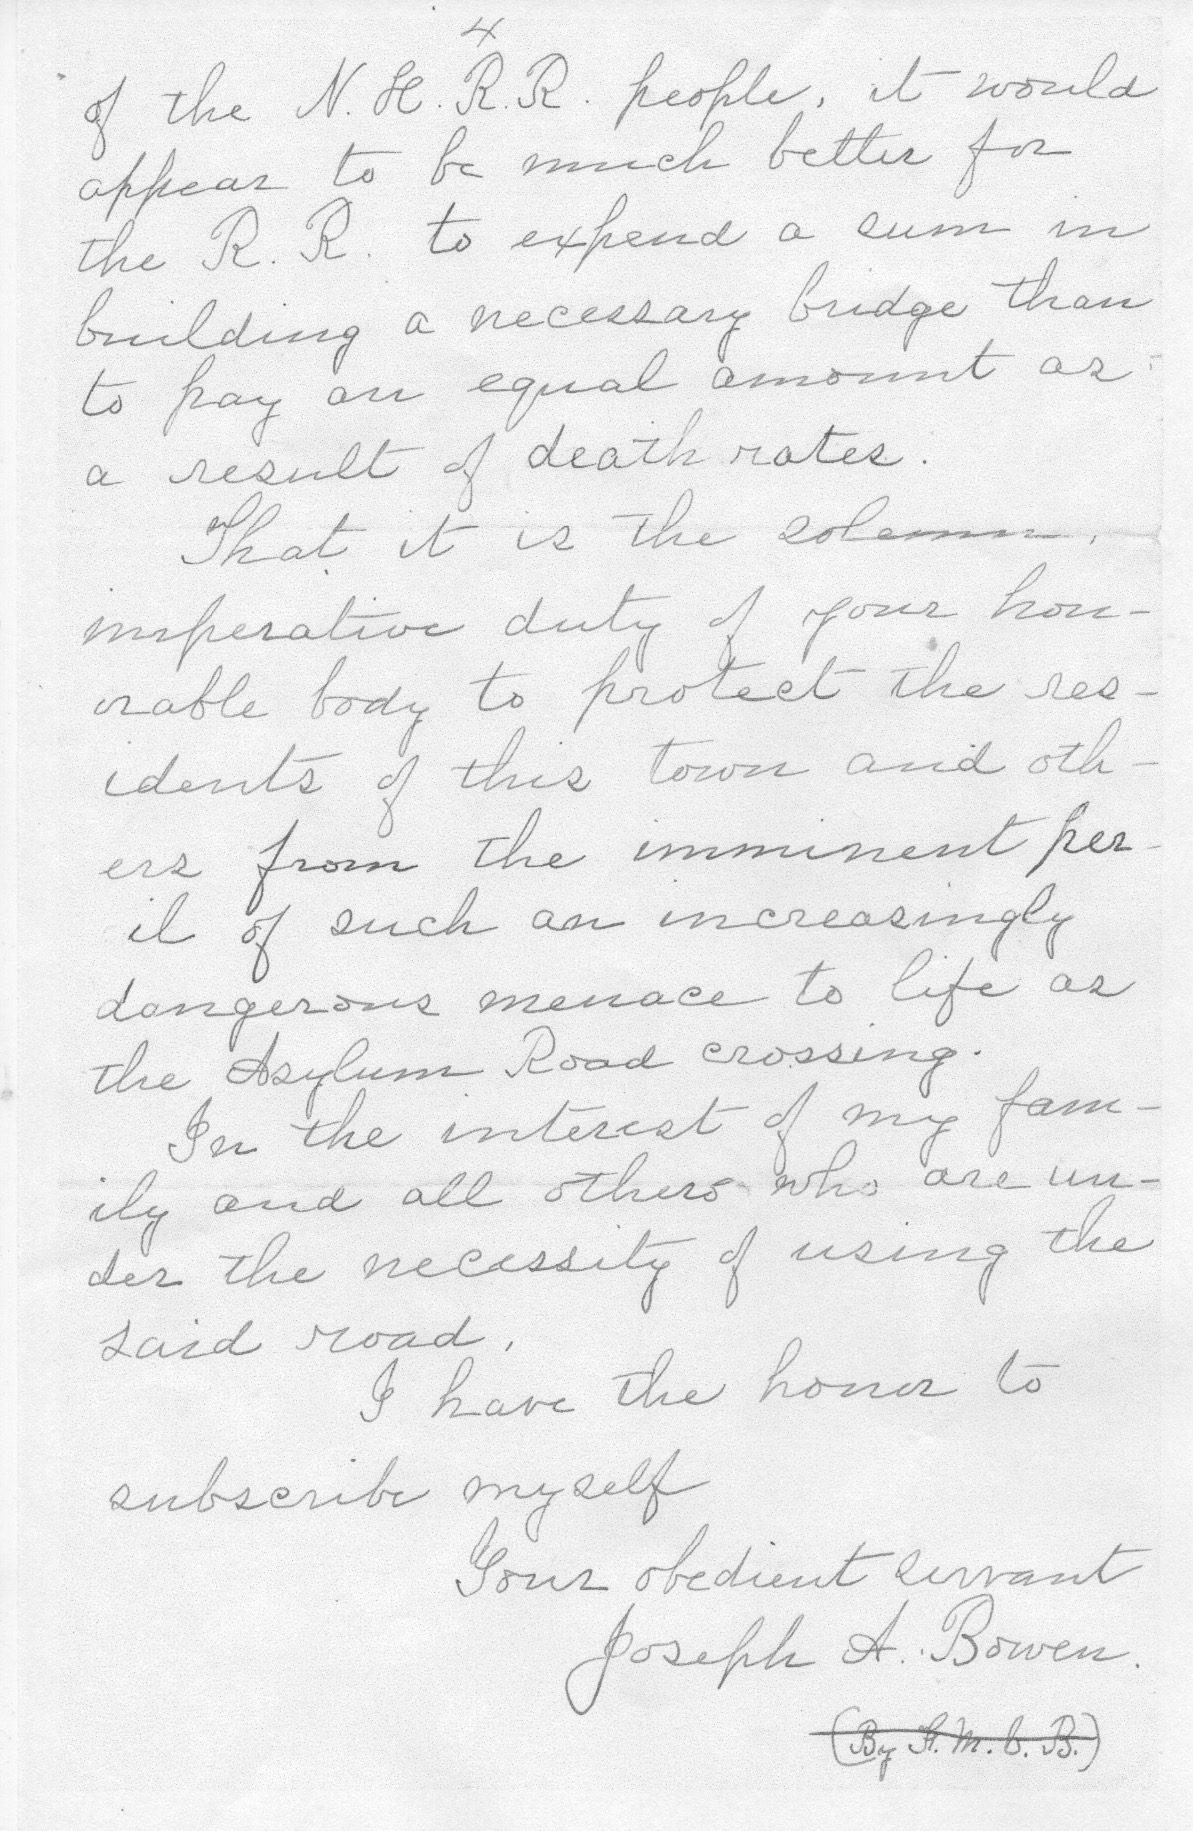 1910 Bowen Letter to Town of Warren